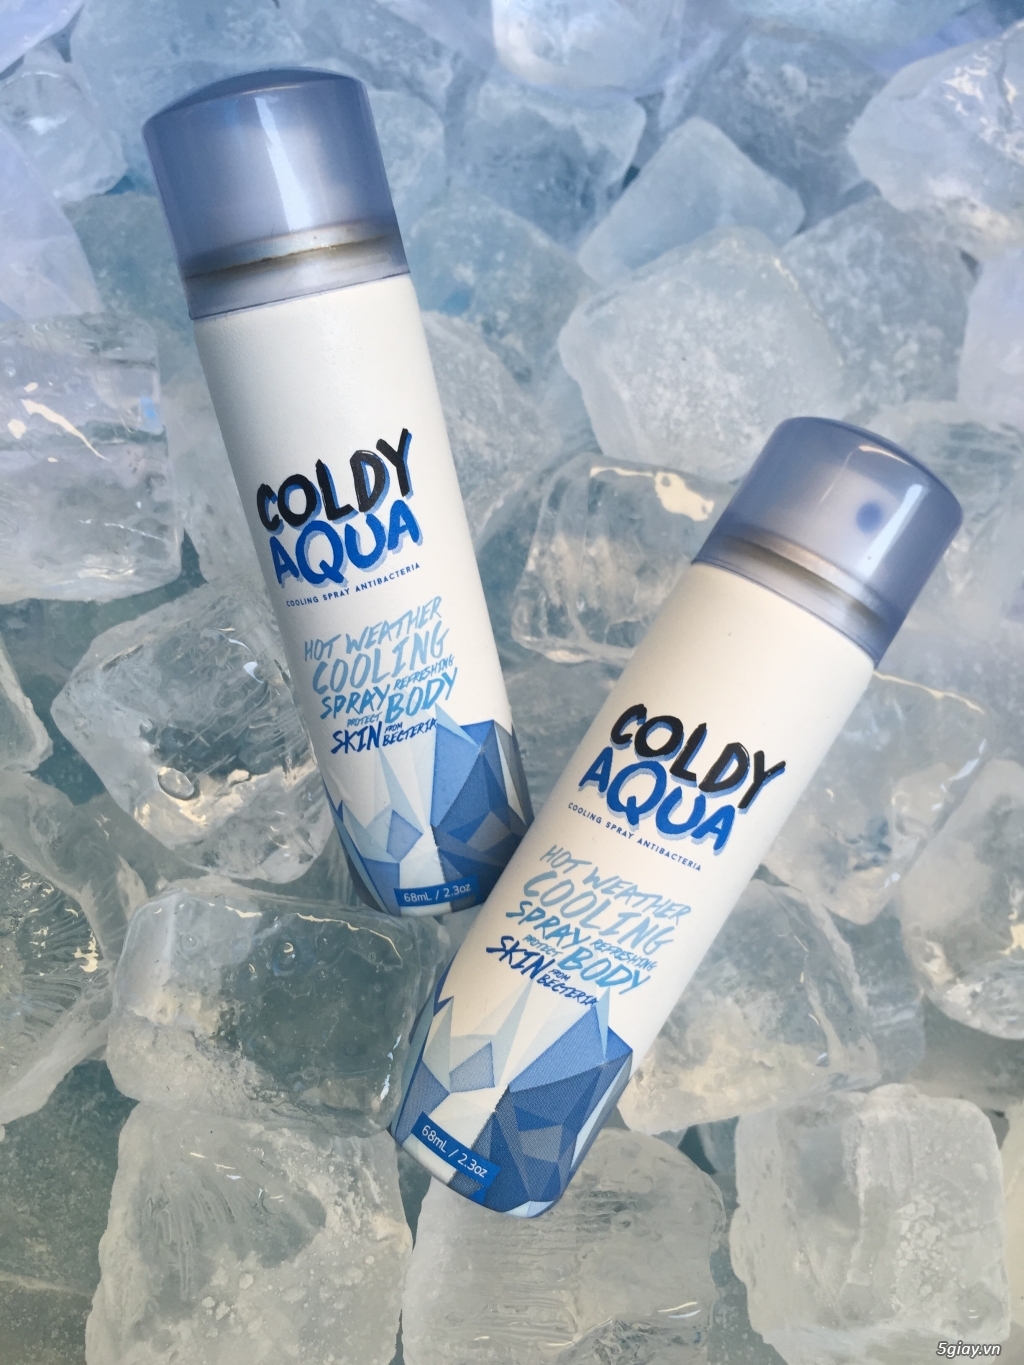 Coldy Aqua - Xịt làm mát cơ thể, hàng thái lan 100% - 2